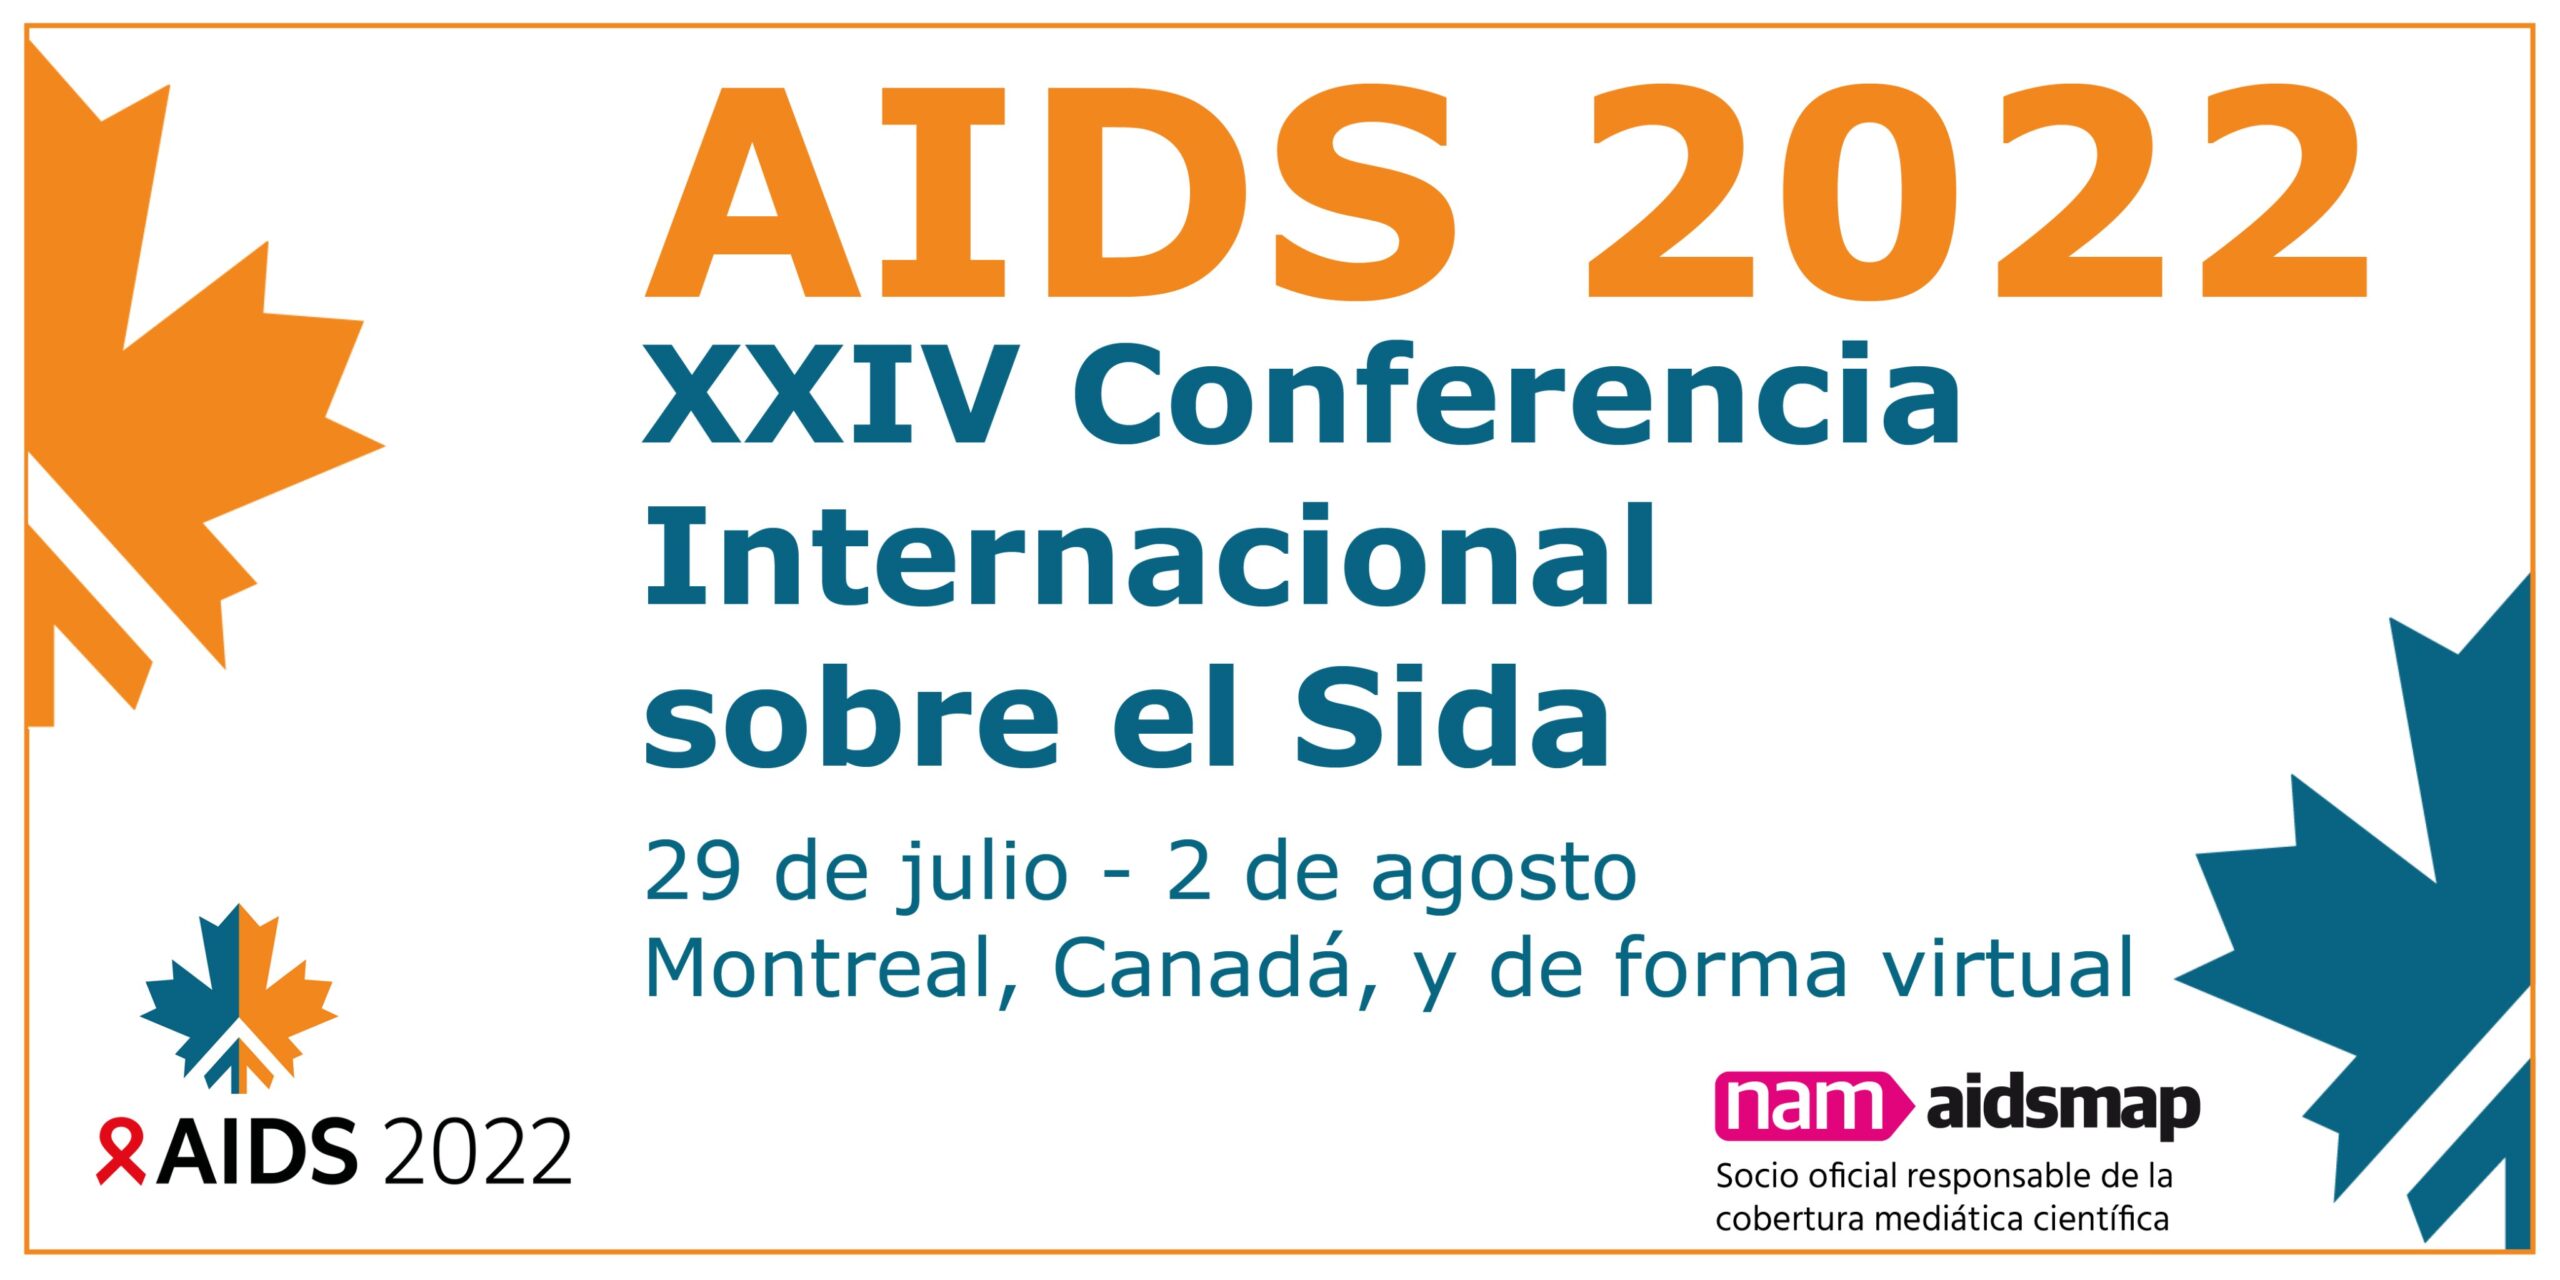 AIDS 2022: XXIV Conferencia Internacional sobre el Sida. Boletín informativo, NAM.